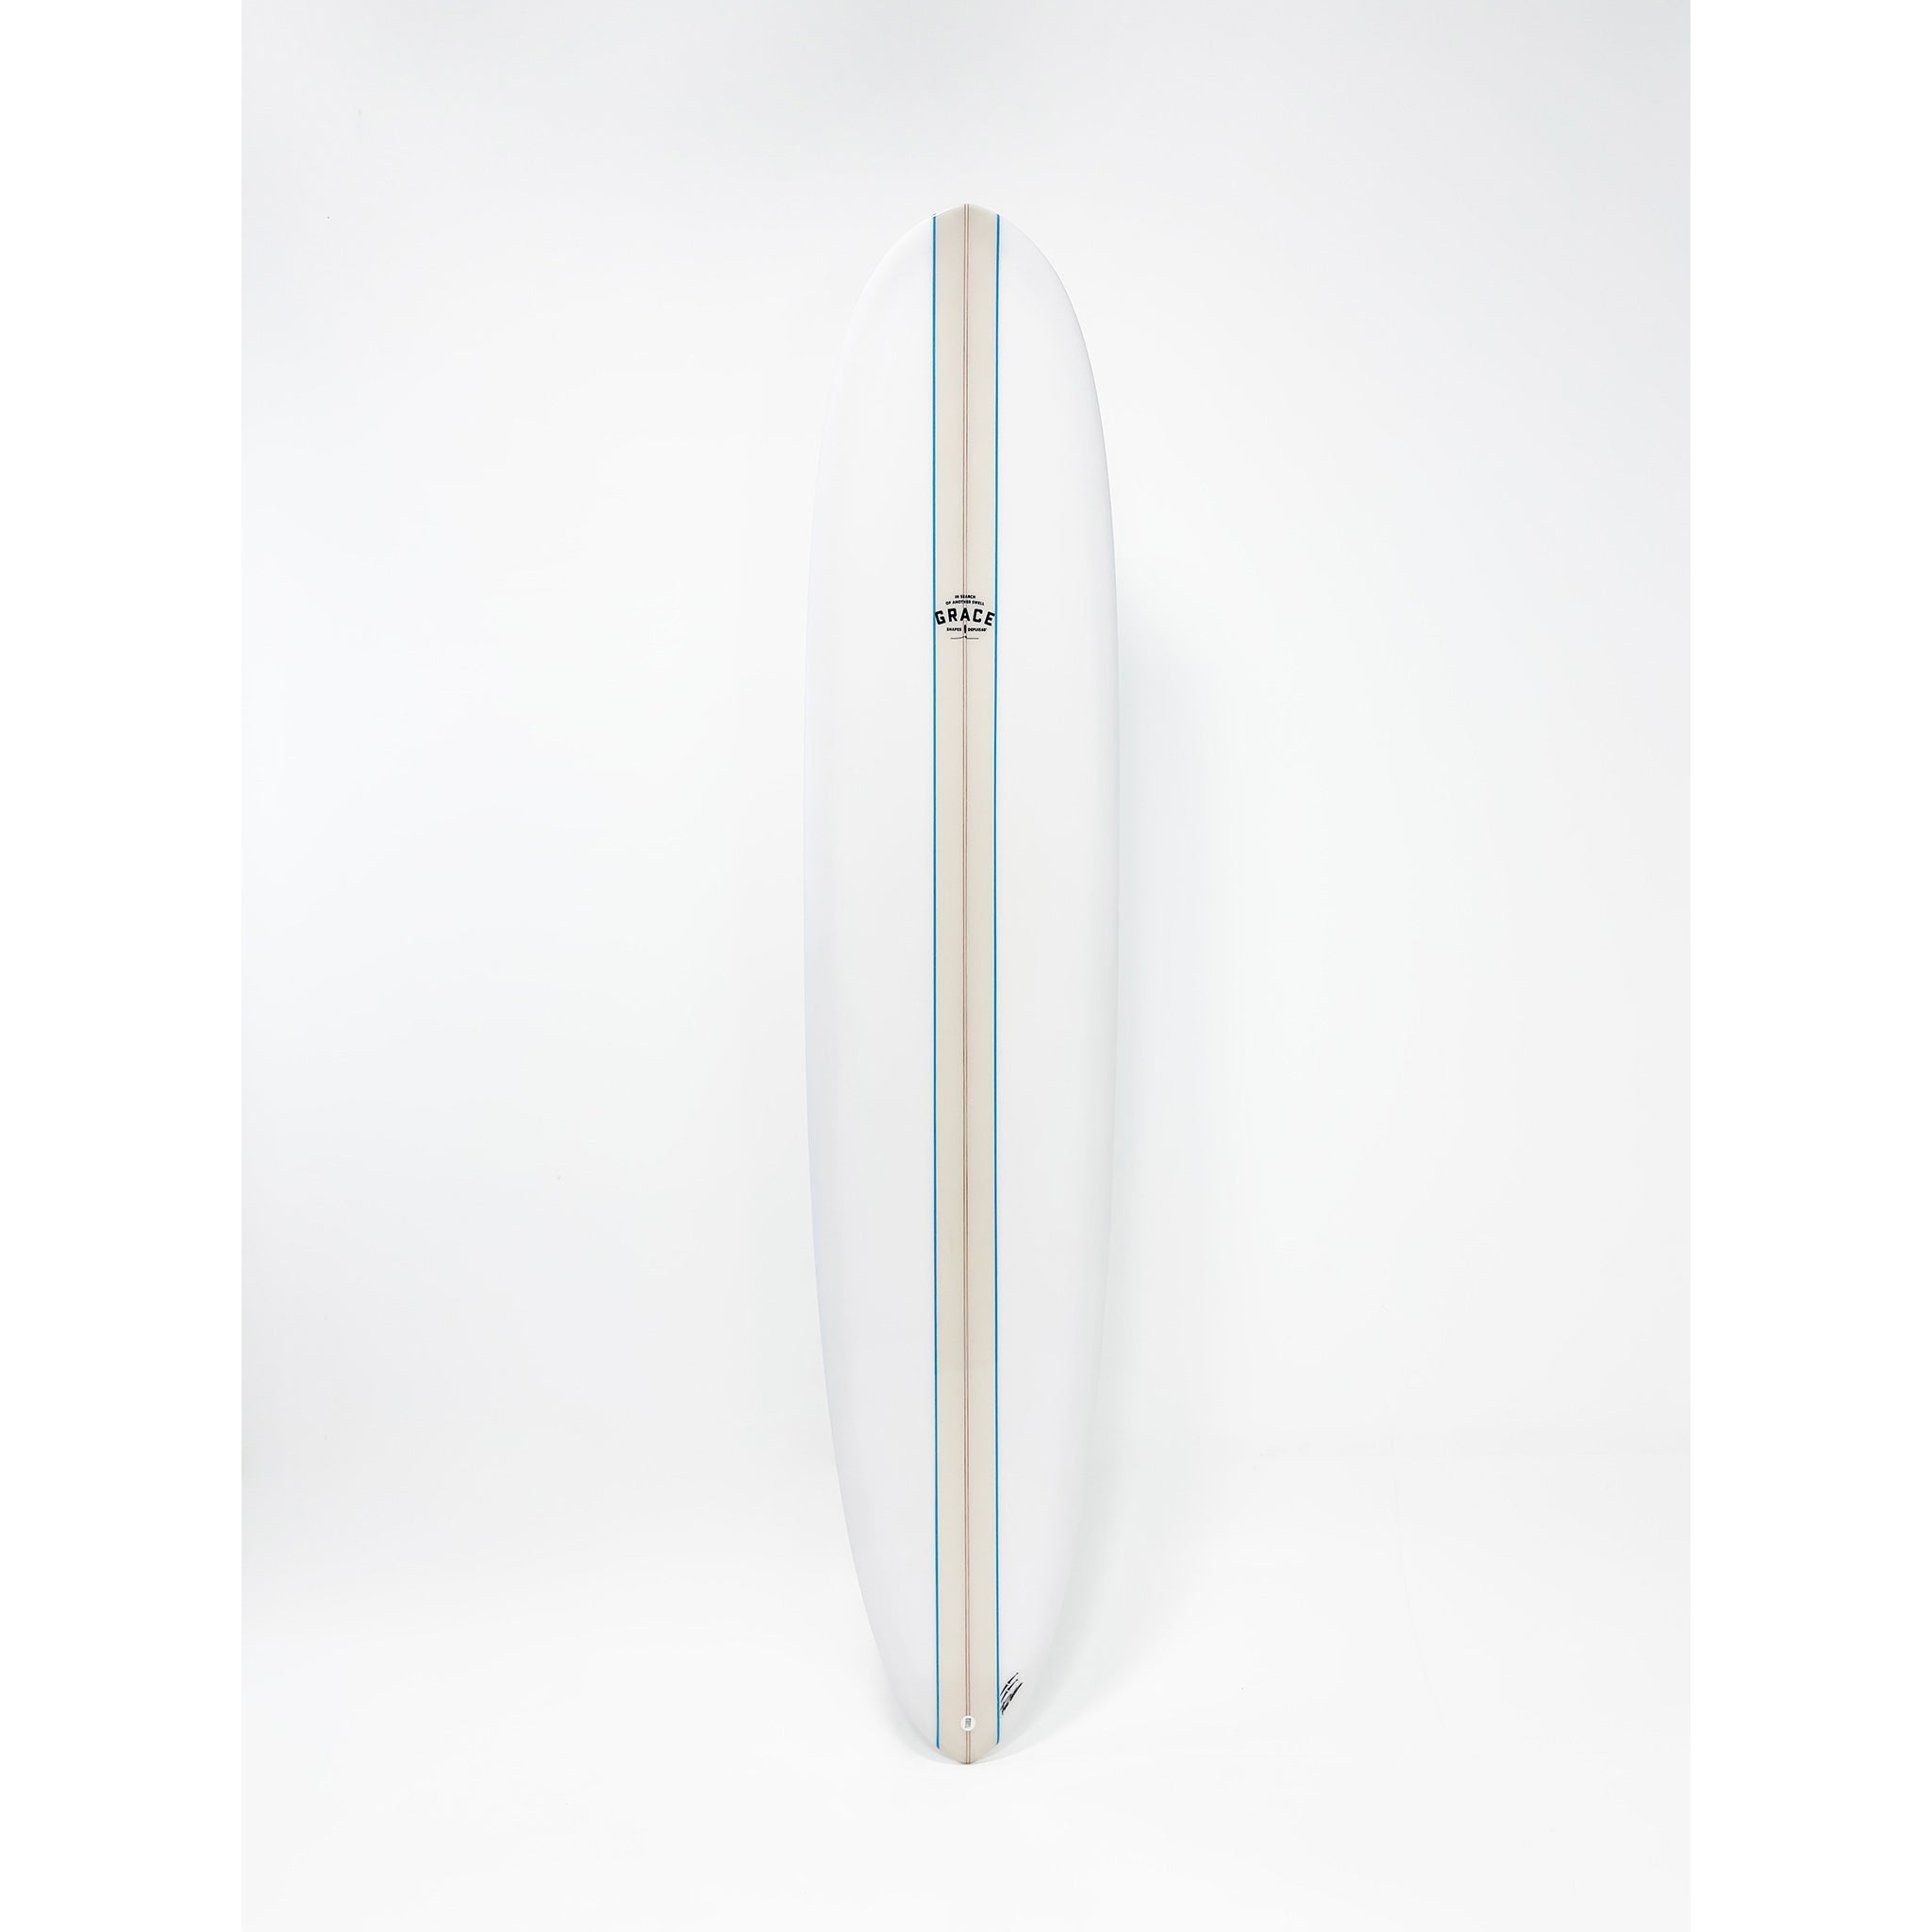 Phil Grace Surfboard Allrounder 8'10 x 22 1/4 x 2 7/8 x 65.3L - LGB001